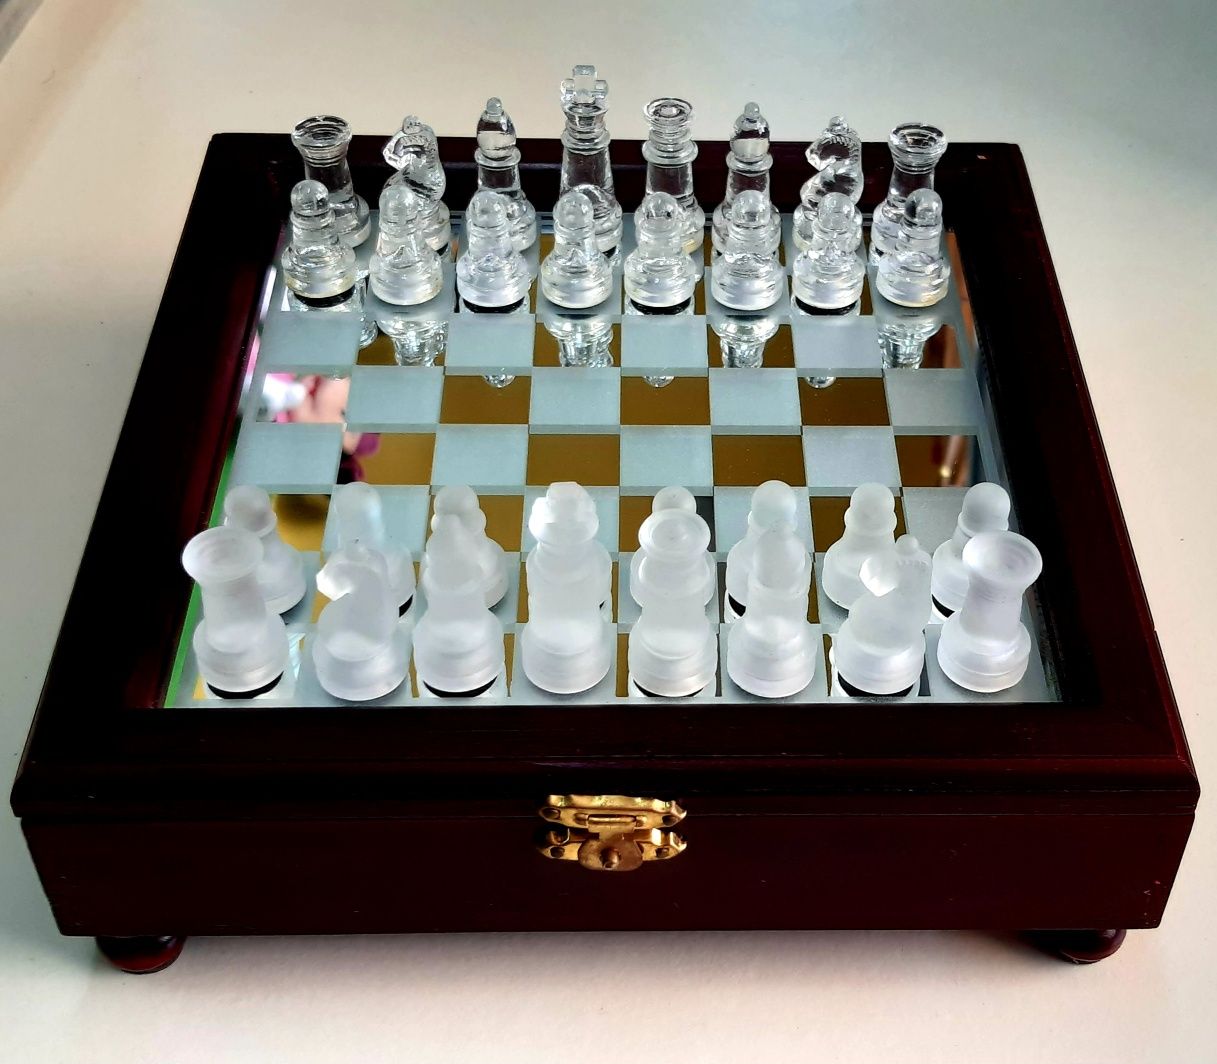 Jogo de xadrez e xadrez com placa de vidro : : Brinquedos e  Jogos